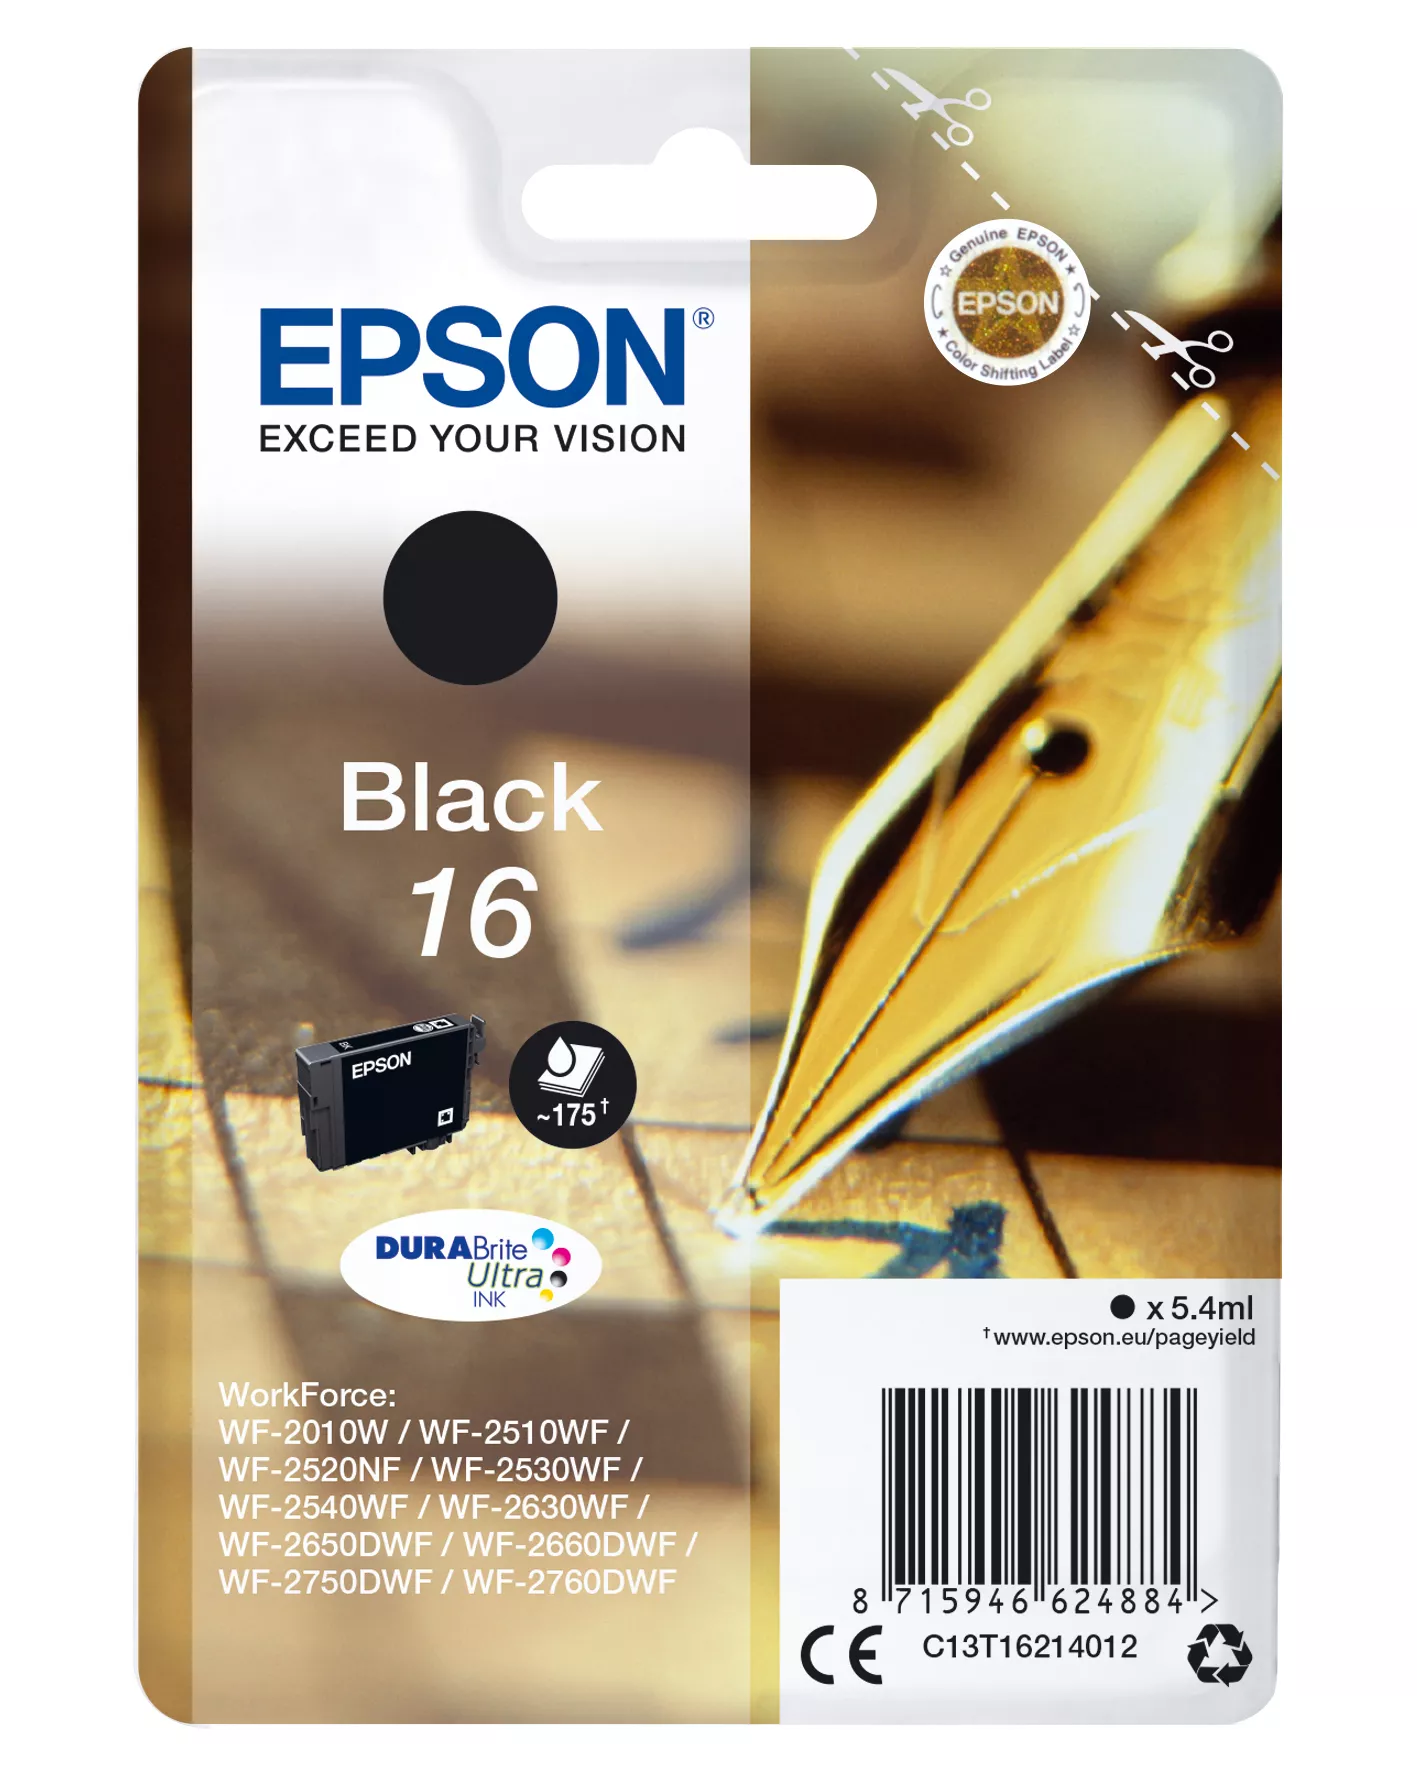 Achat EPSON 16 cartouche dencre noir capacité standard 5.4ml 175 au meilleur prix